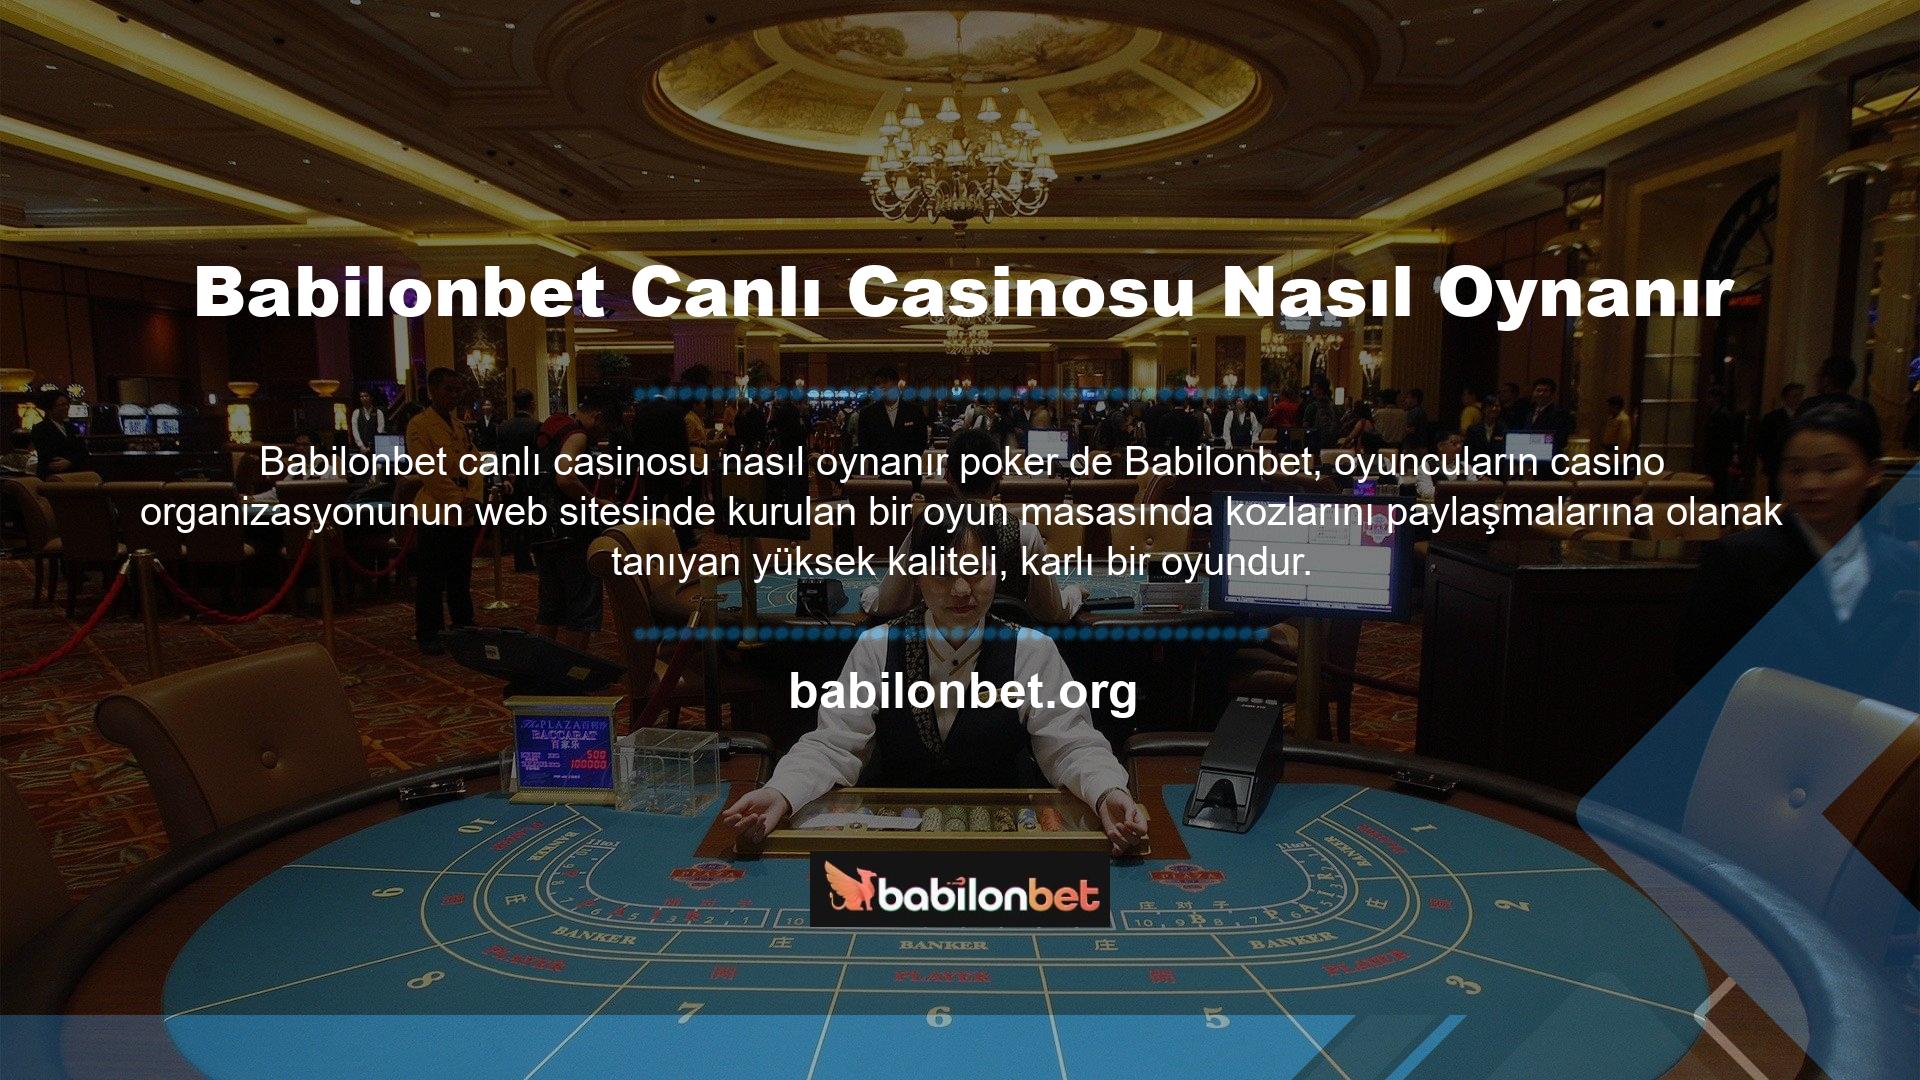 Casino güverte oyunu, bir slot makinesinden belirli sayıda jeton ve her jetondan alınan parasal değeri kullanan bir oyundur